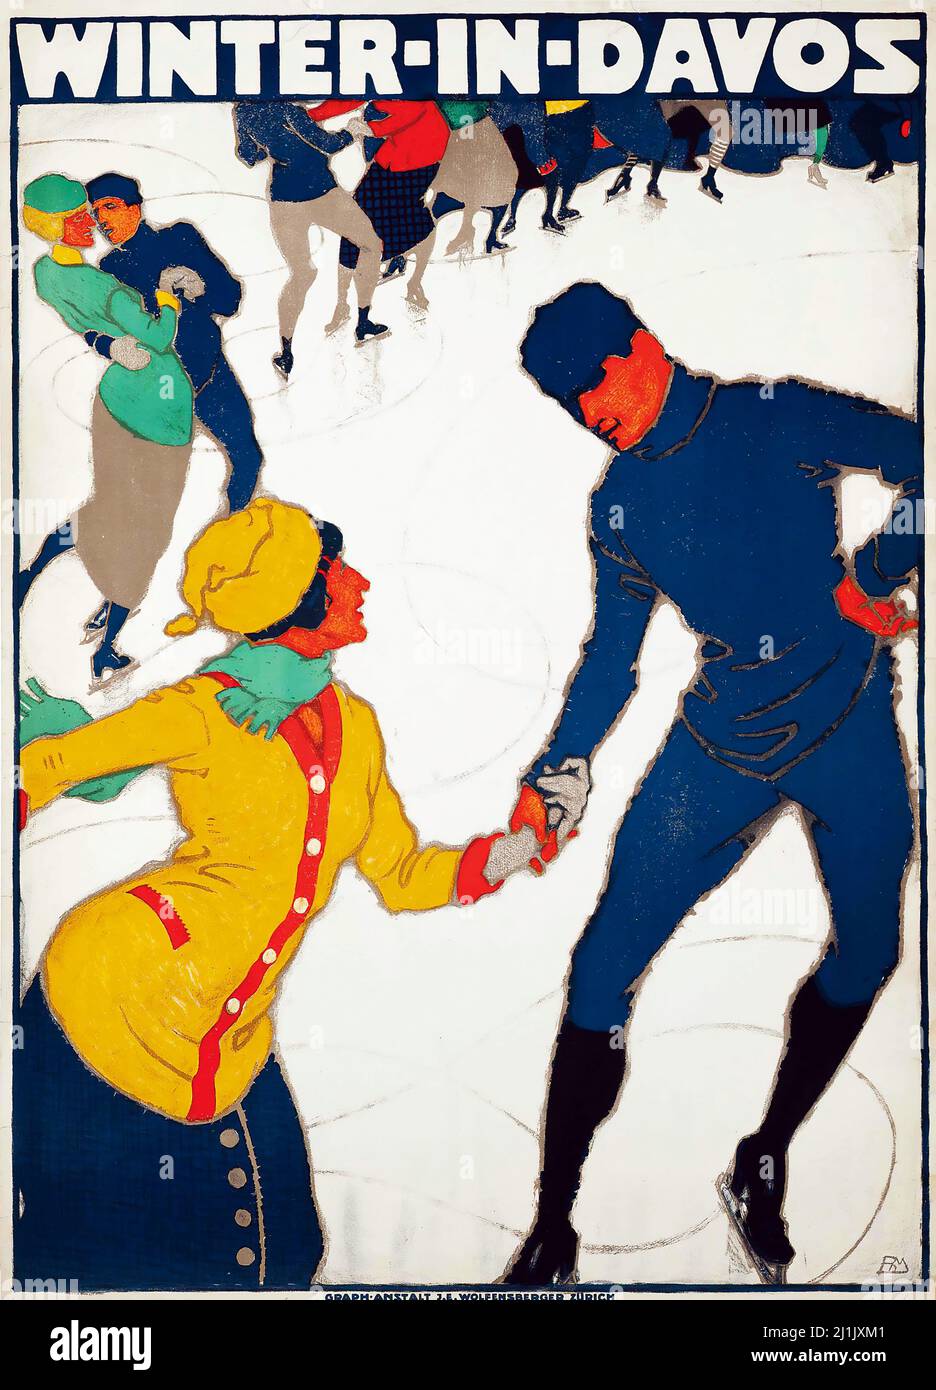 Vintage travel poster, Winter sport, ski - MANGOLD, Burkhard - WINTER IN DAVOS 1914 - Schweiz, Suisse, Switzerland, Swiss Stock Photo